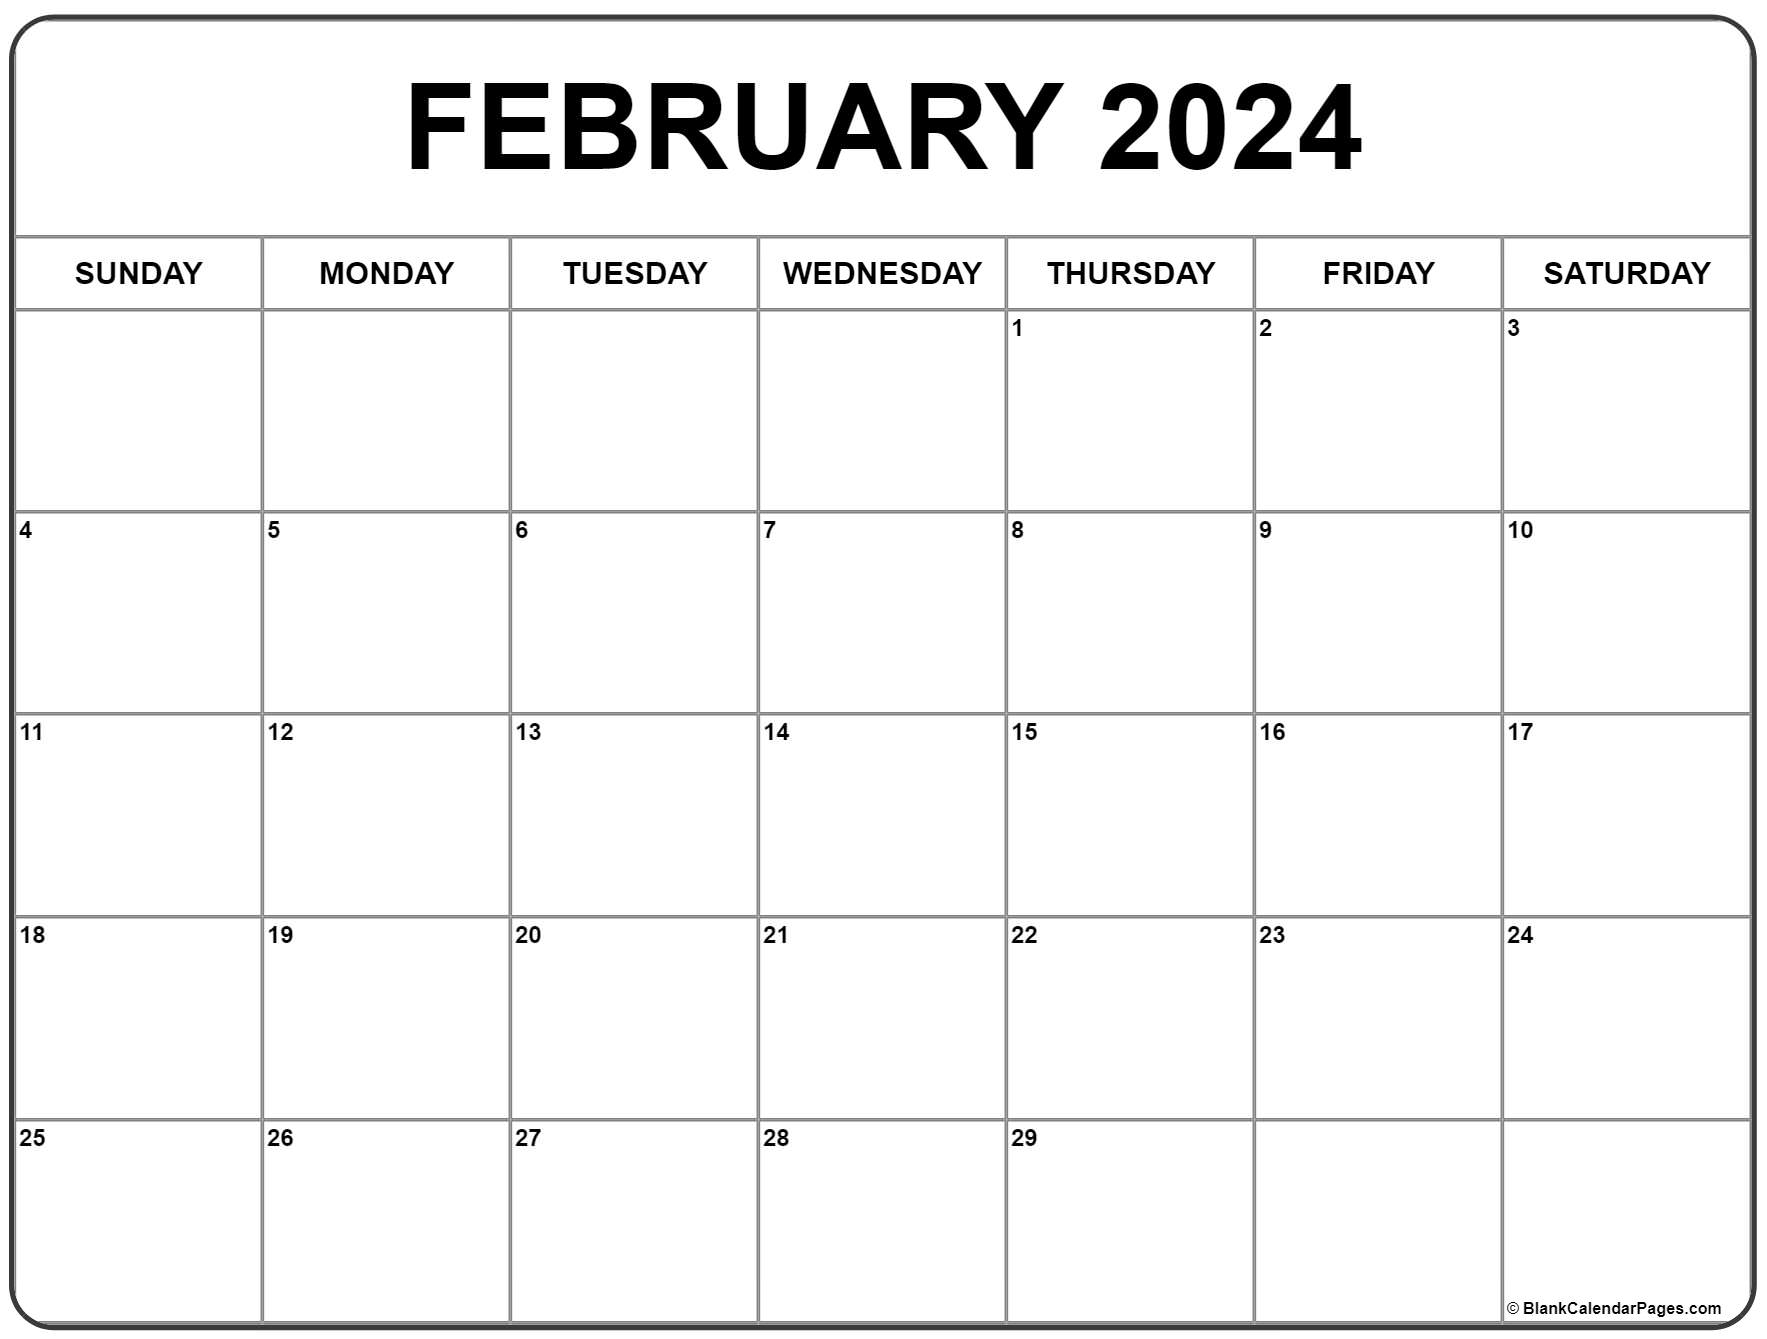 February 2024 Calendar | Free Printable Calendar for Printable 2024 Calendar February